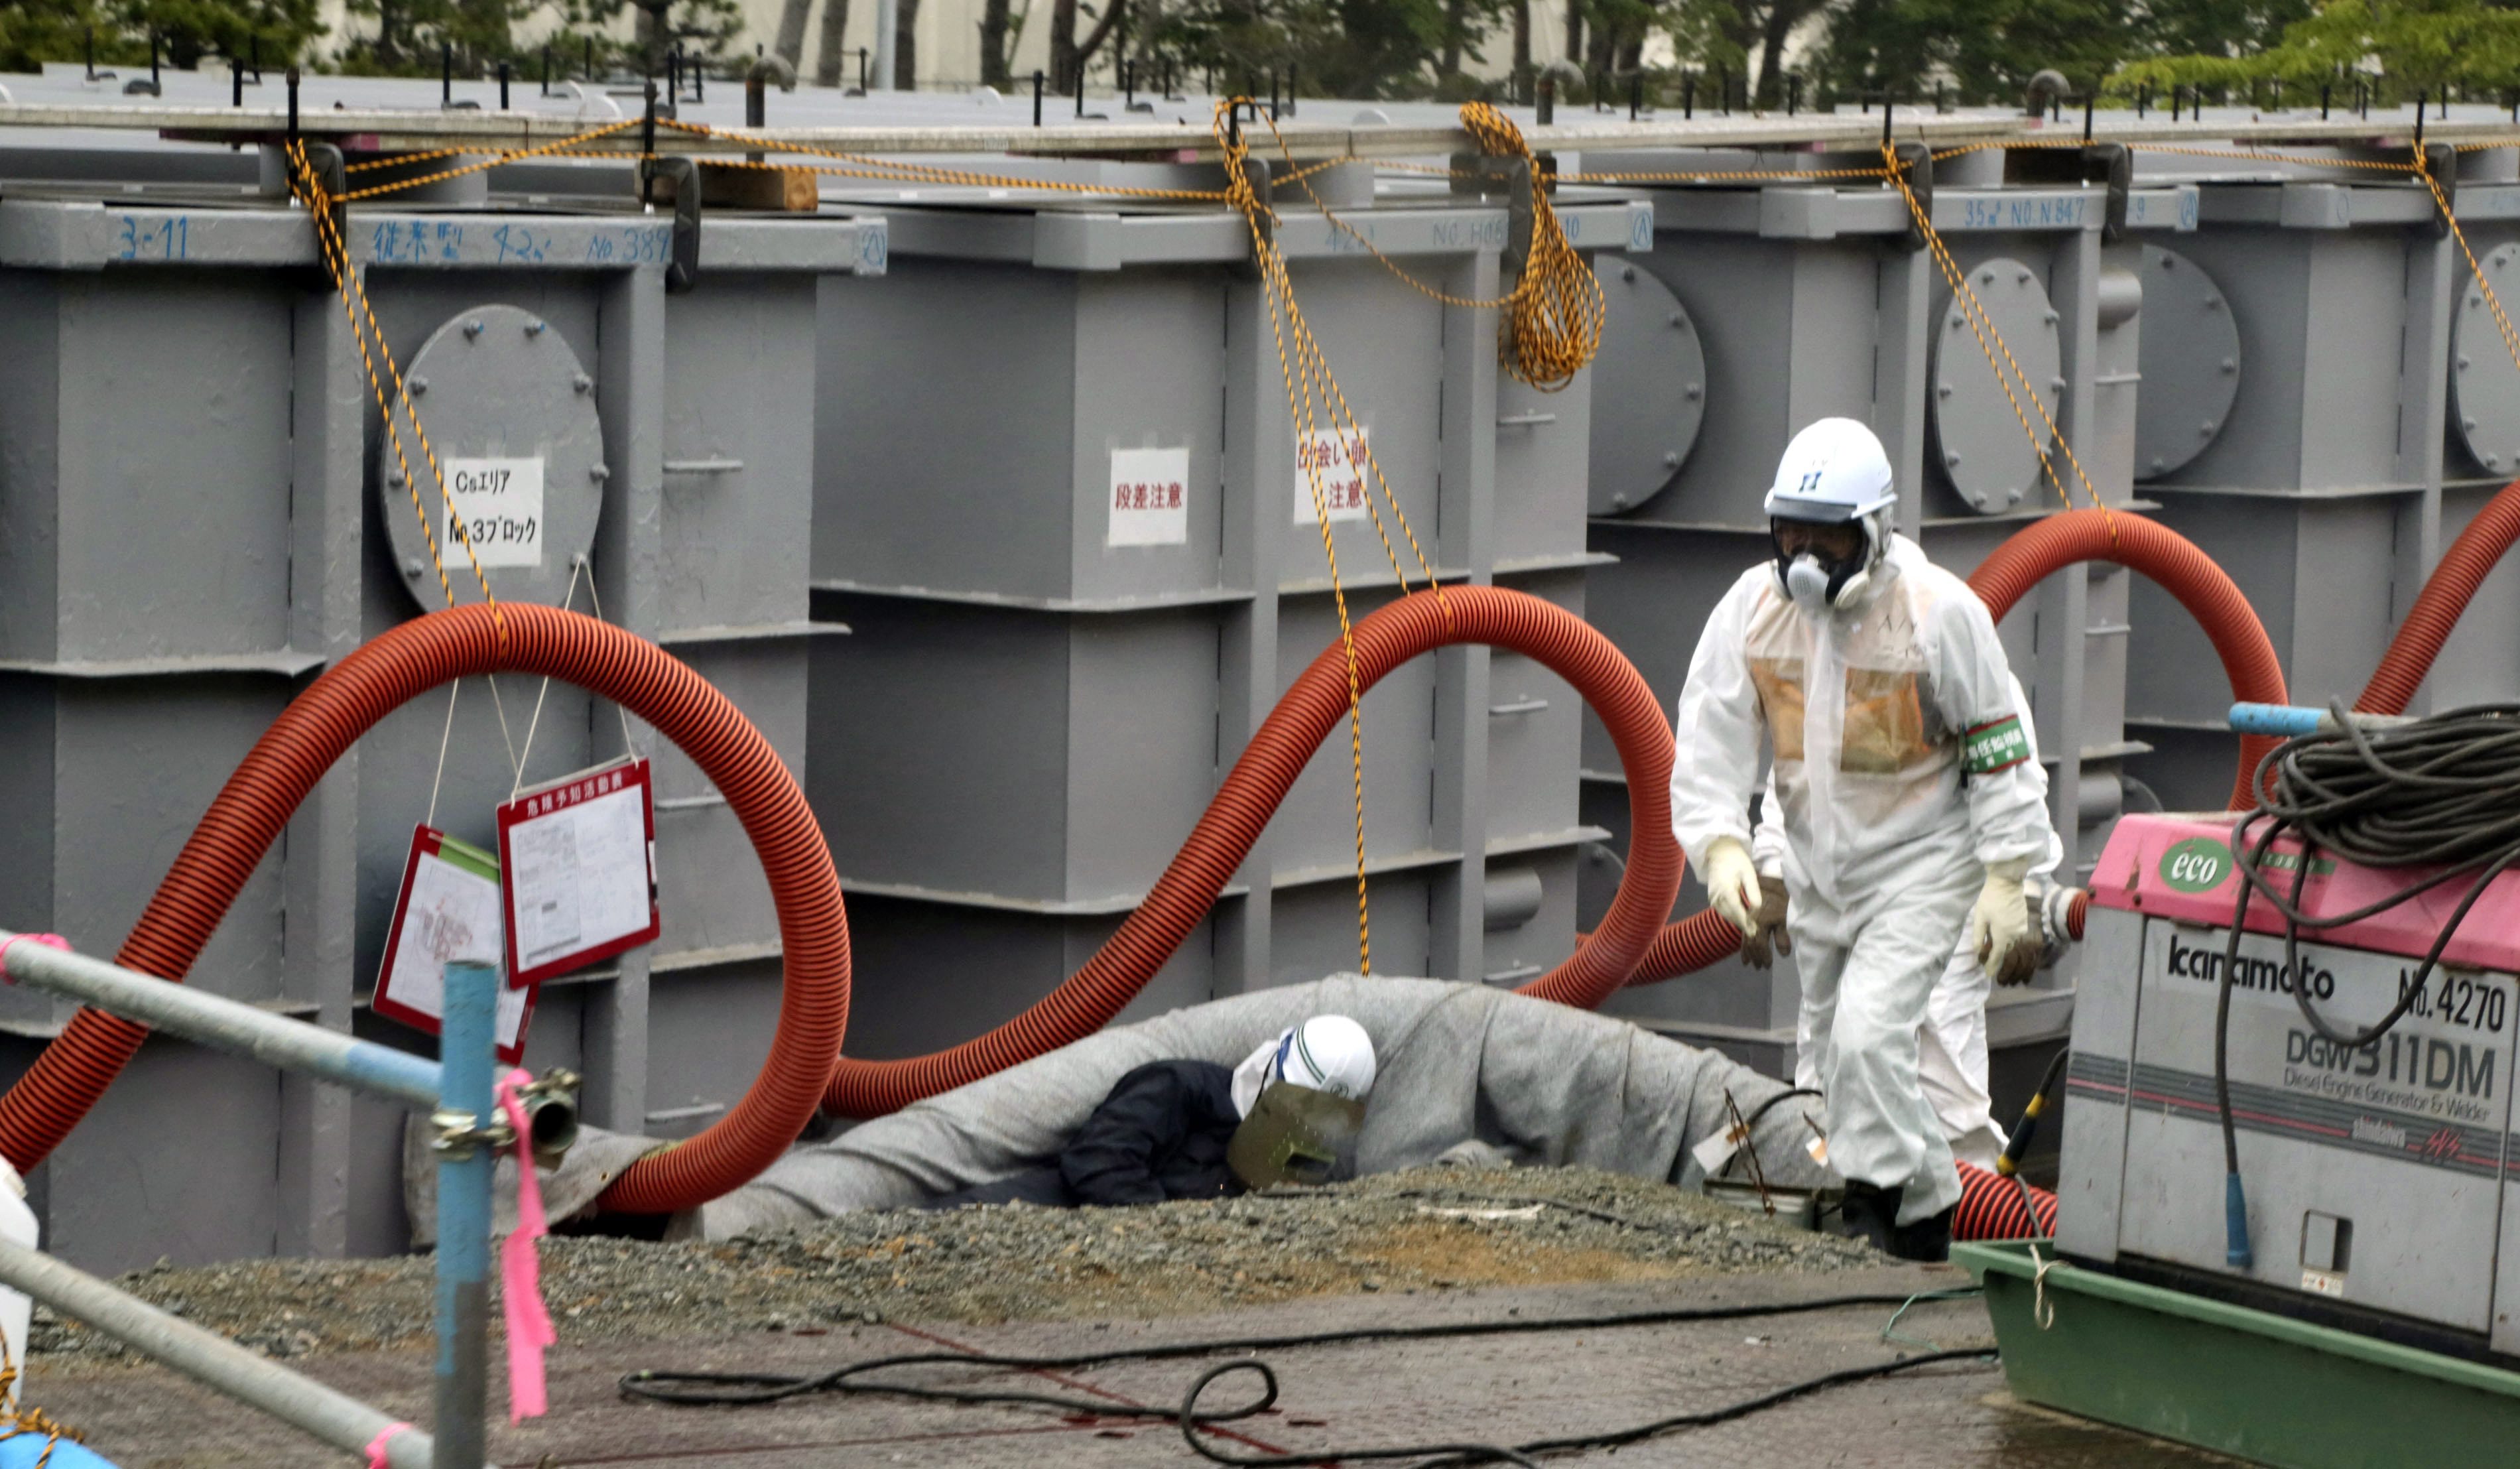 De Japanse toezichthouder op kerncentrales heeft de beschadigde kerncentrale van Fukushima waaruit radioactief water weglekt opgeschaald van categorie 1 naar categorie 3 van de INES-schaal voor nucleaire incidenten. Categorie 3 staat voor een 'serieus incident'. Dat is woensdag bekendgemaakt door de toezichthouder. De categorie is verhoogd door de hoeveelheid en de dichtheid van de straling in het vervuilde water. De centrale Fukushima I werd de afgelopen maanden getroffen door een aantal waterlekkages, maar het is voor het eerst sinds de ramp 2 jaar geleden dat Japan de INES-schaal gebruikt. De aan zee gelegen kerncentrale werd in 2011 getroffen door een verwoestende aardbeving en tsunami die een grote kernramp veroorzaakte. De ramp werd toen ingedeeld in de hoogste categorie van de schaal voor nucleaire incidenten.